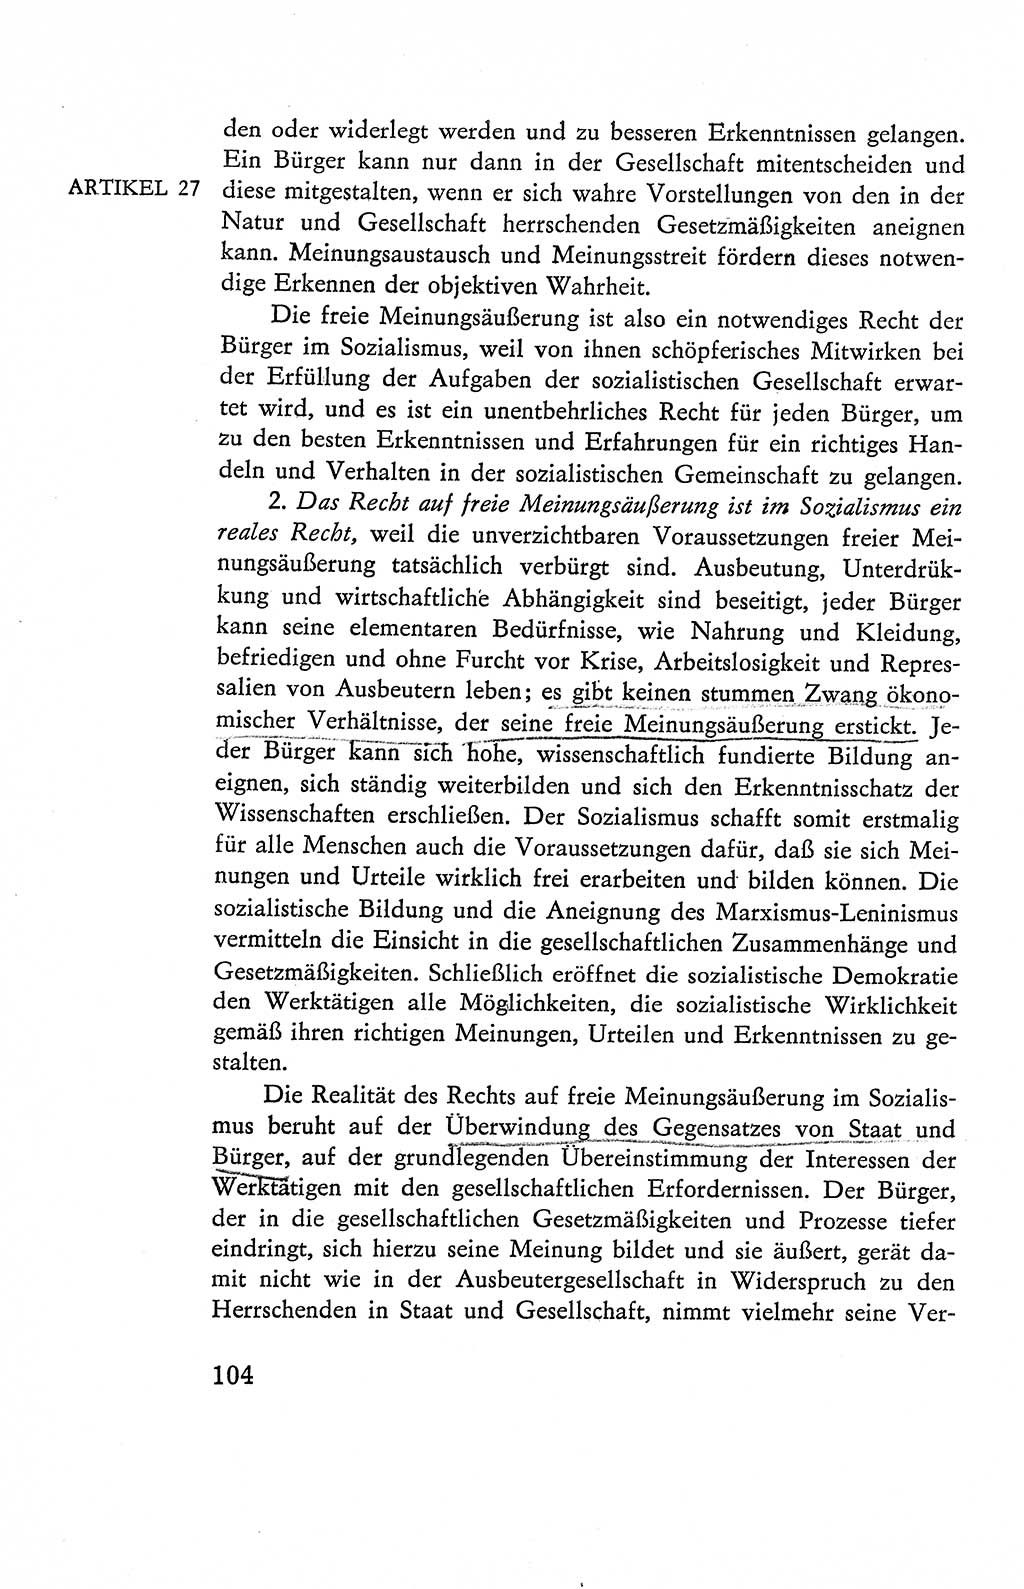 Verfassung der Deutschen Demokratischen Republik (DDR), Dokumente, Kommentar 1969, Band 2, Seite 104 (Verf. DDR Dok. Komm. 1969, Bd. 2, S. 104)